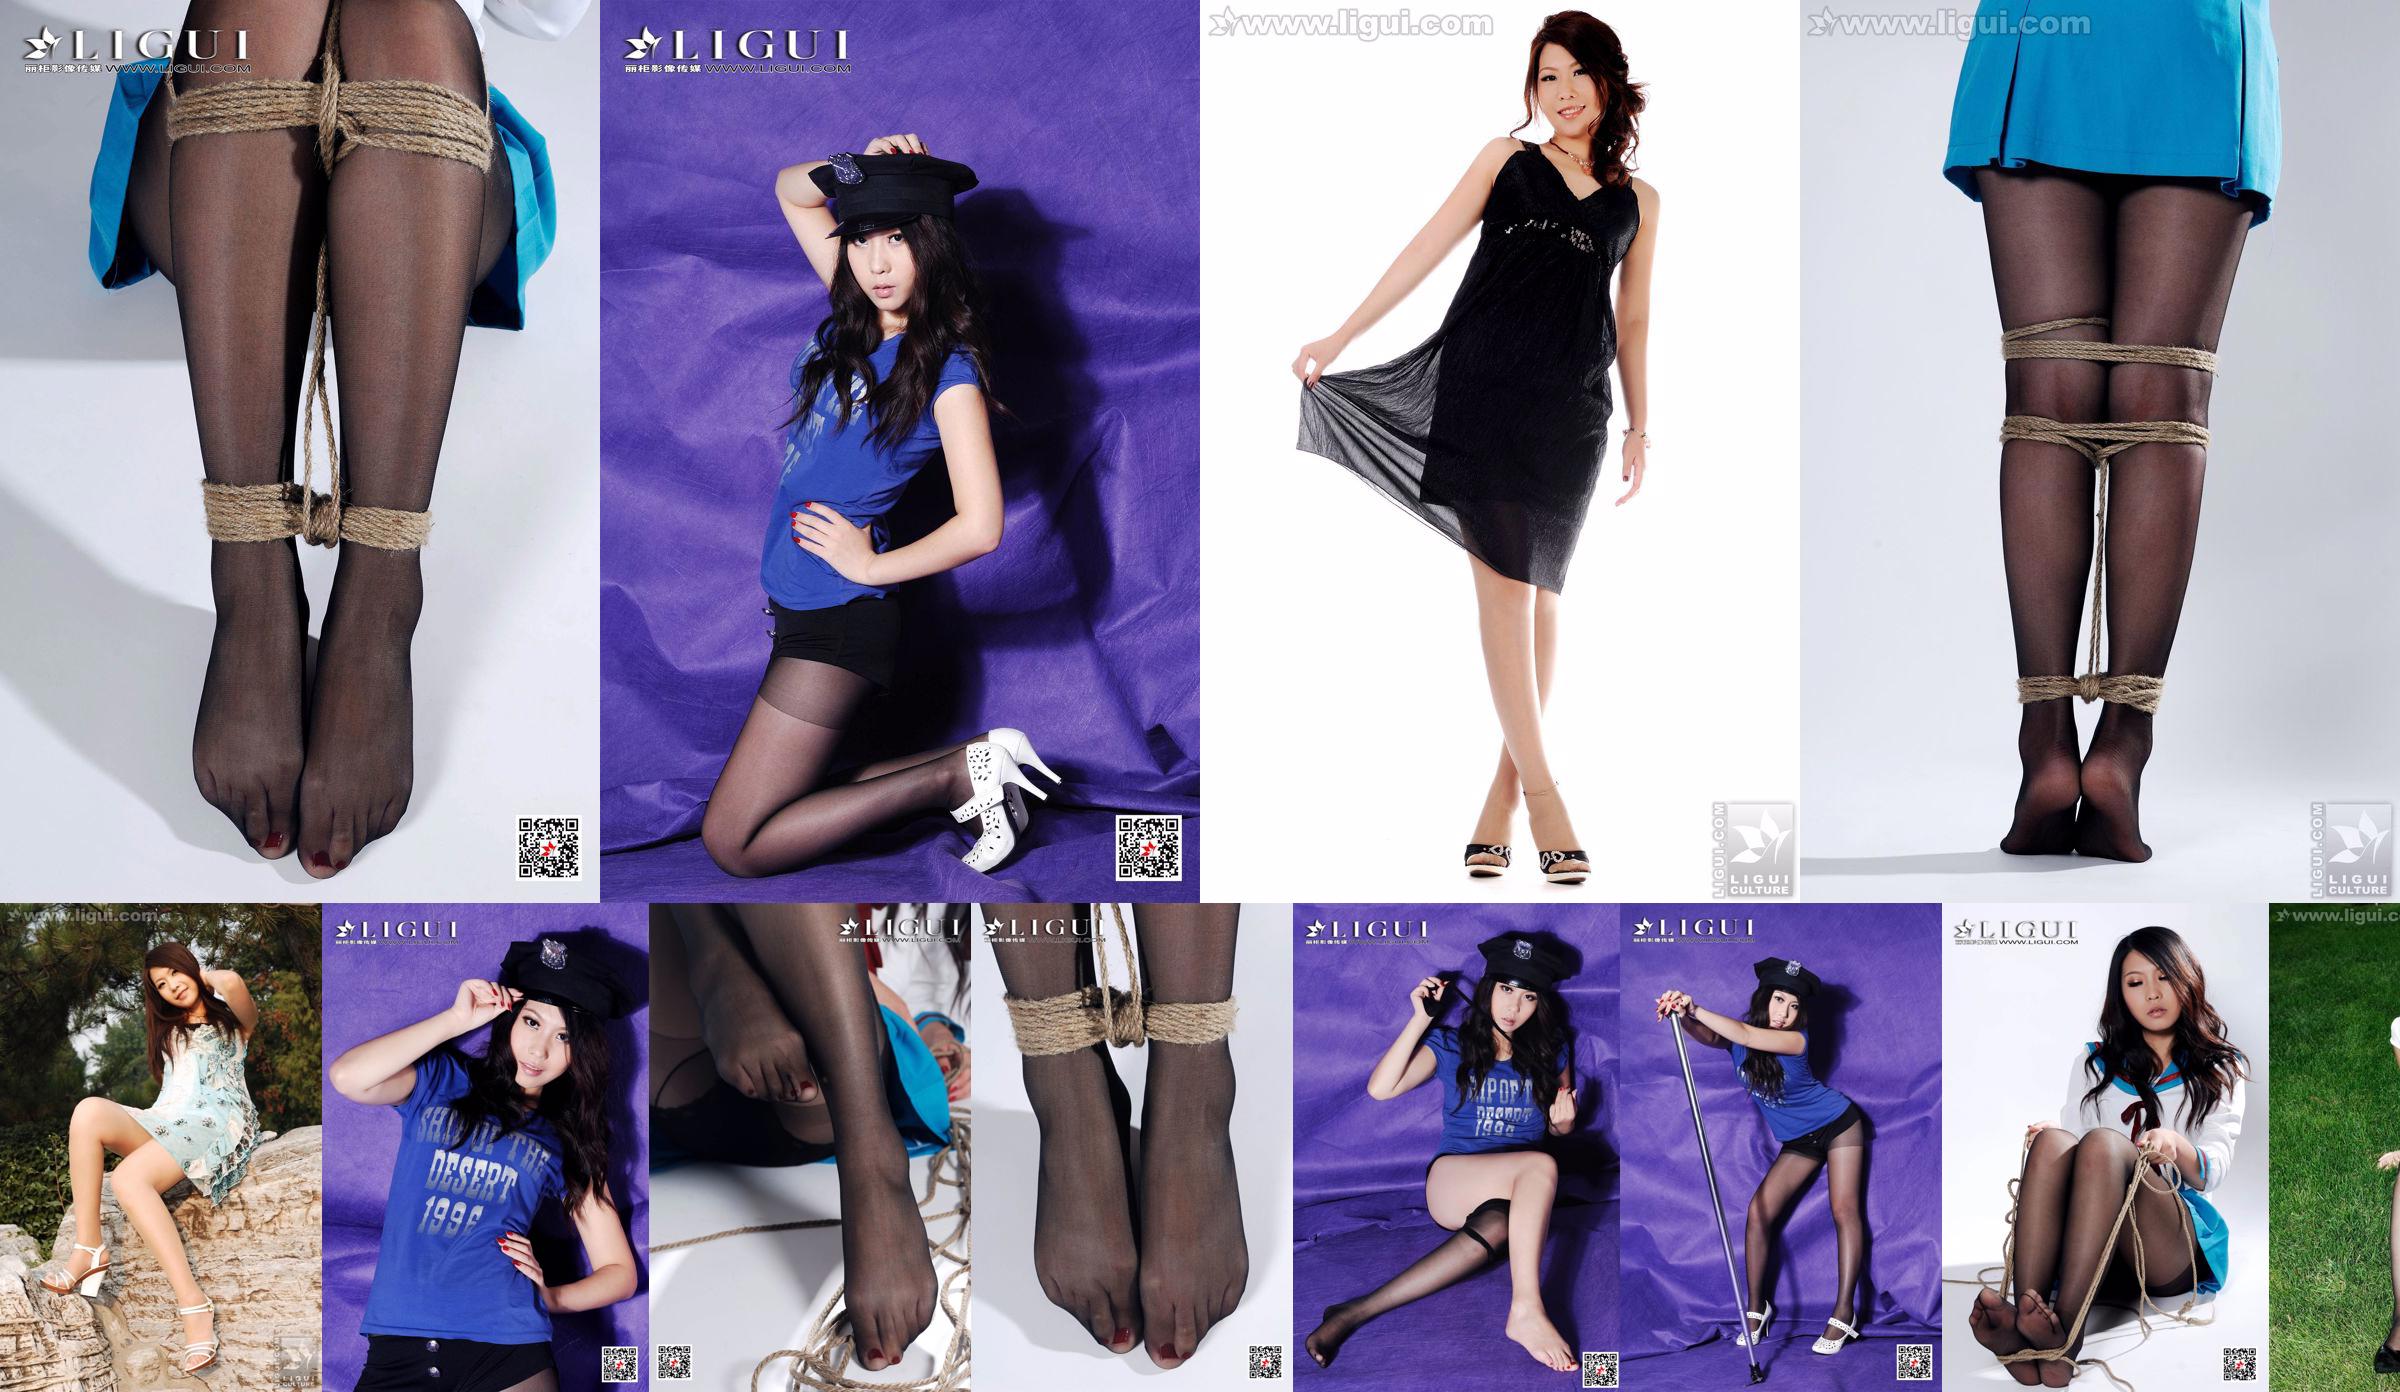 Model Youyou "Beauty Park Showcase" [丽 柜 LiGui] Bild von schönen Beinen und Jadefüßen No.de0a18 Seite 6